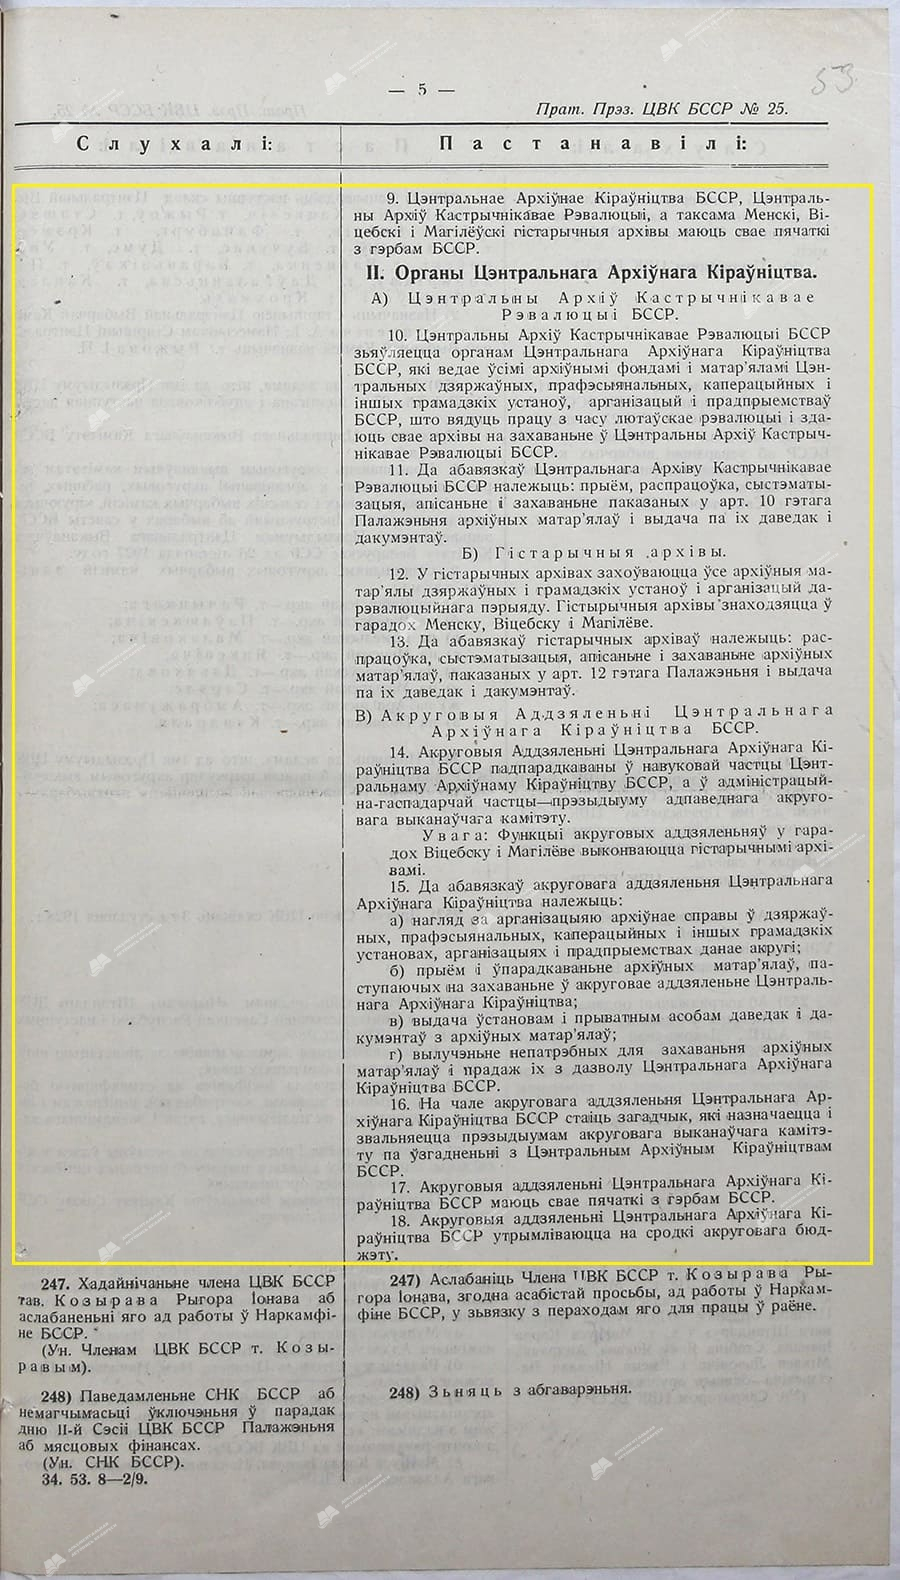 Положения о Центральном архивном управлении БССР и его органах-с. 1